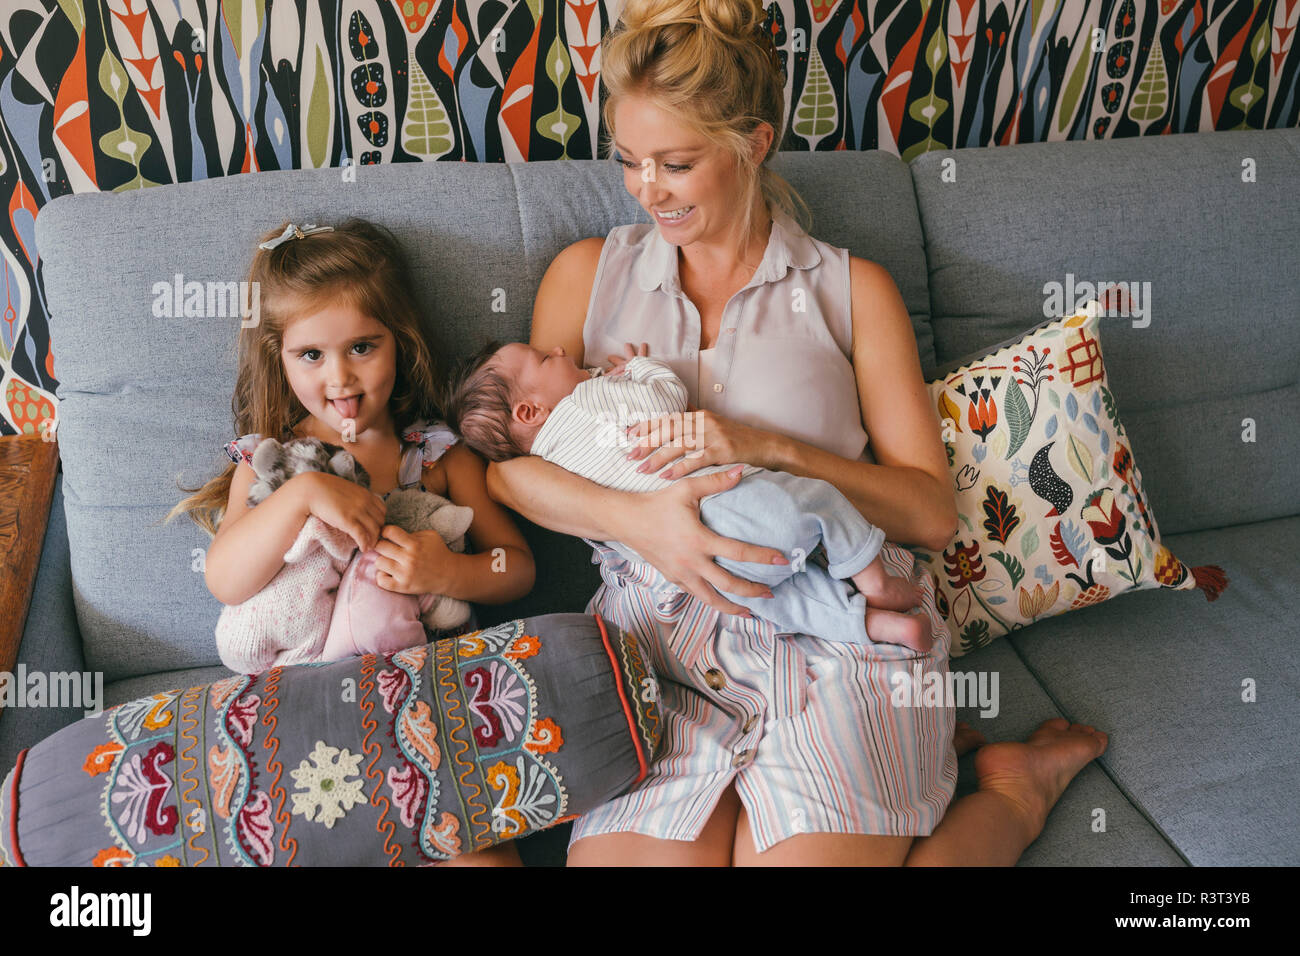 Smiling mother sitting on couch avec nouveau-né et sa fille Banque D'Images